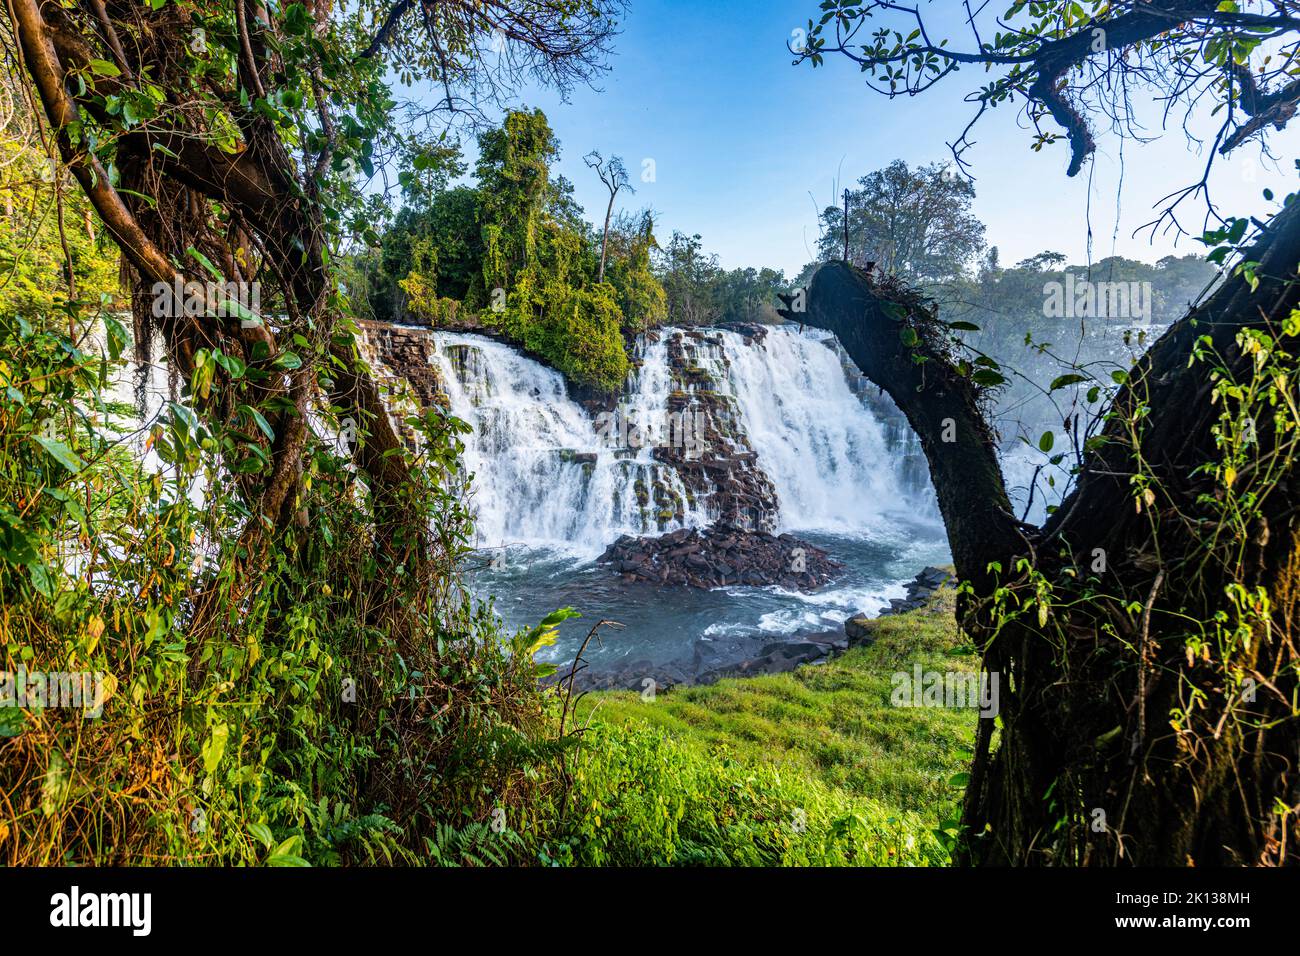 Die Wasserfälle von Kabwelume am Kalungwishi-Fluss im Norden Sambias, Afrika Stockfoto